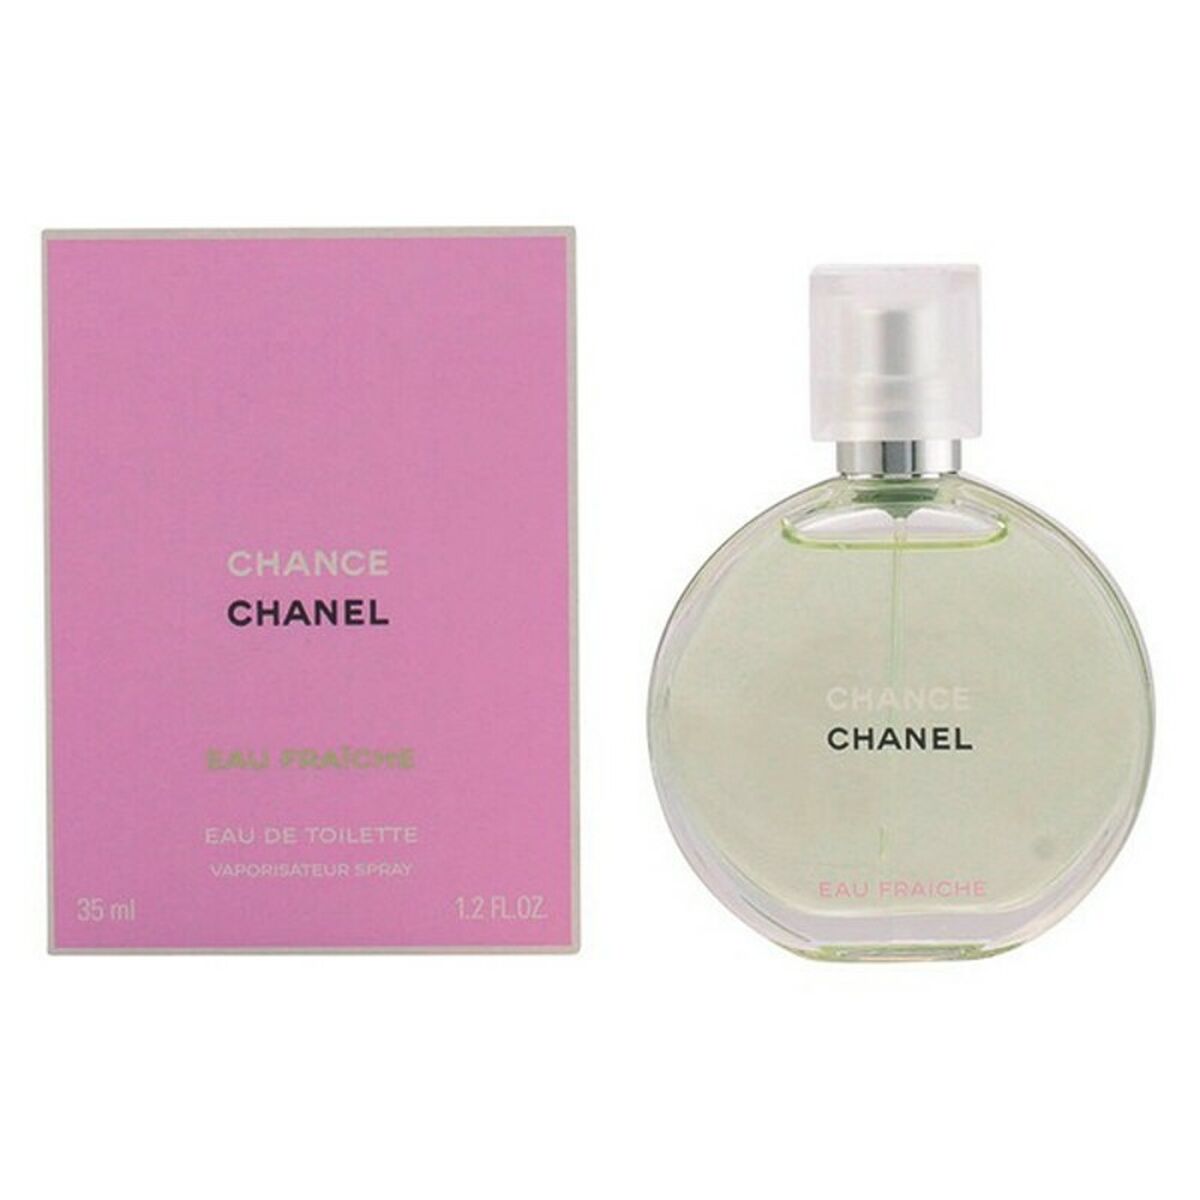 Parfum Femme Chance Eau Fraiche Chanel EDT